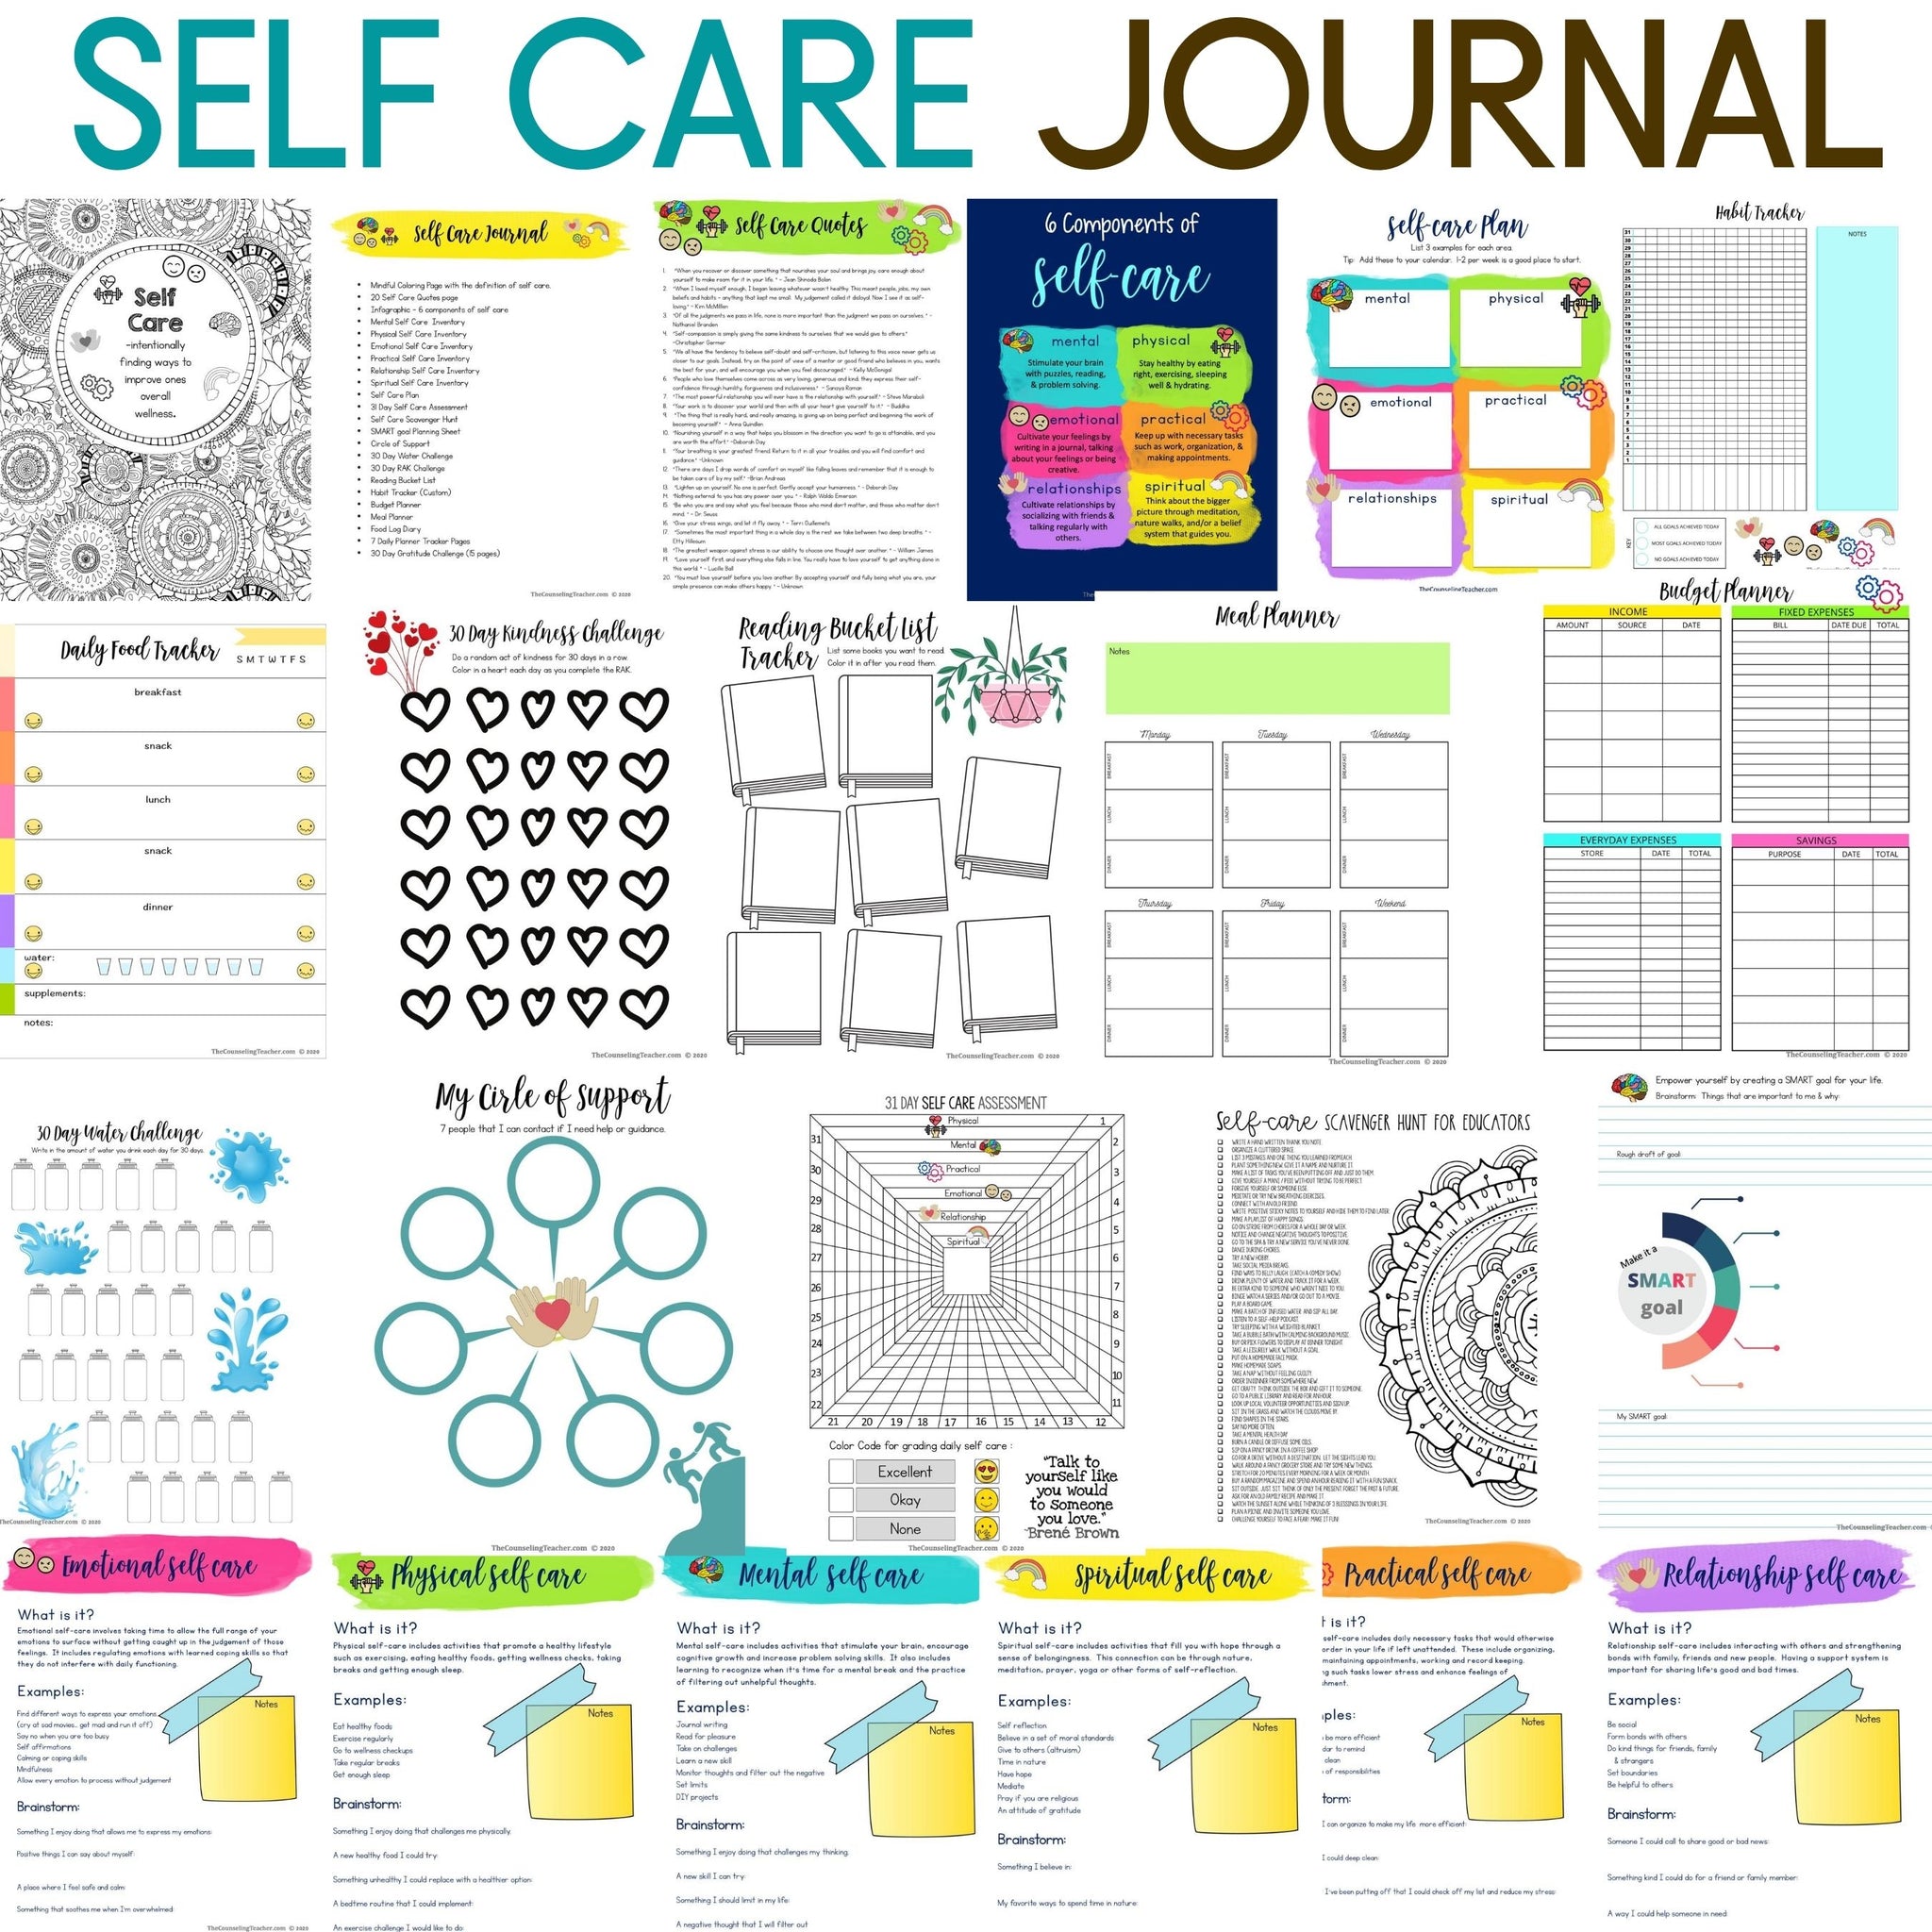 Self-Care Journaling Kit